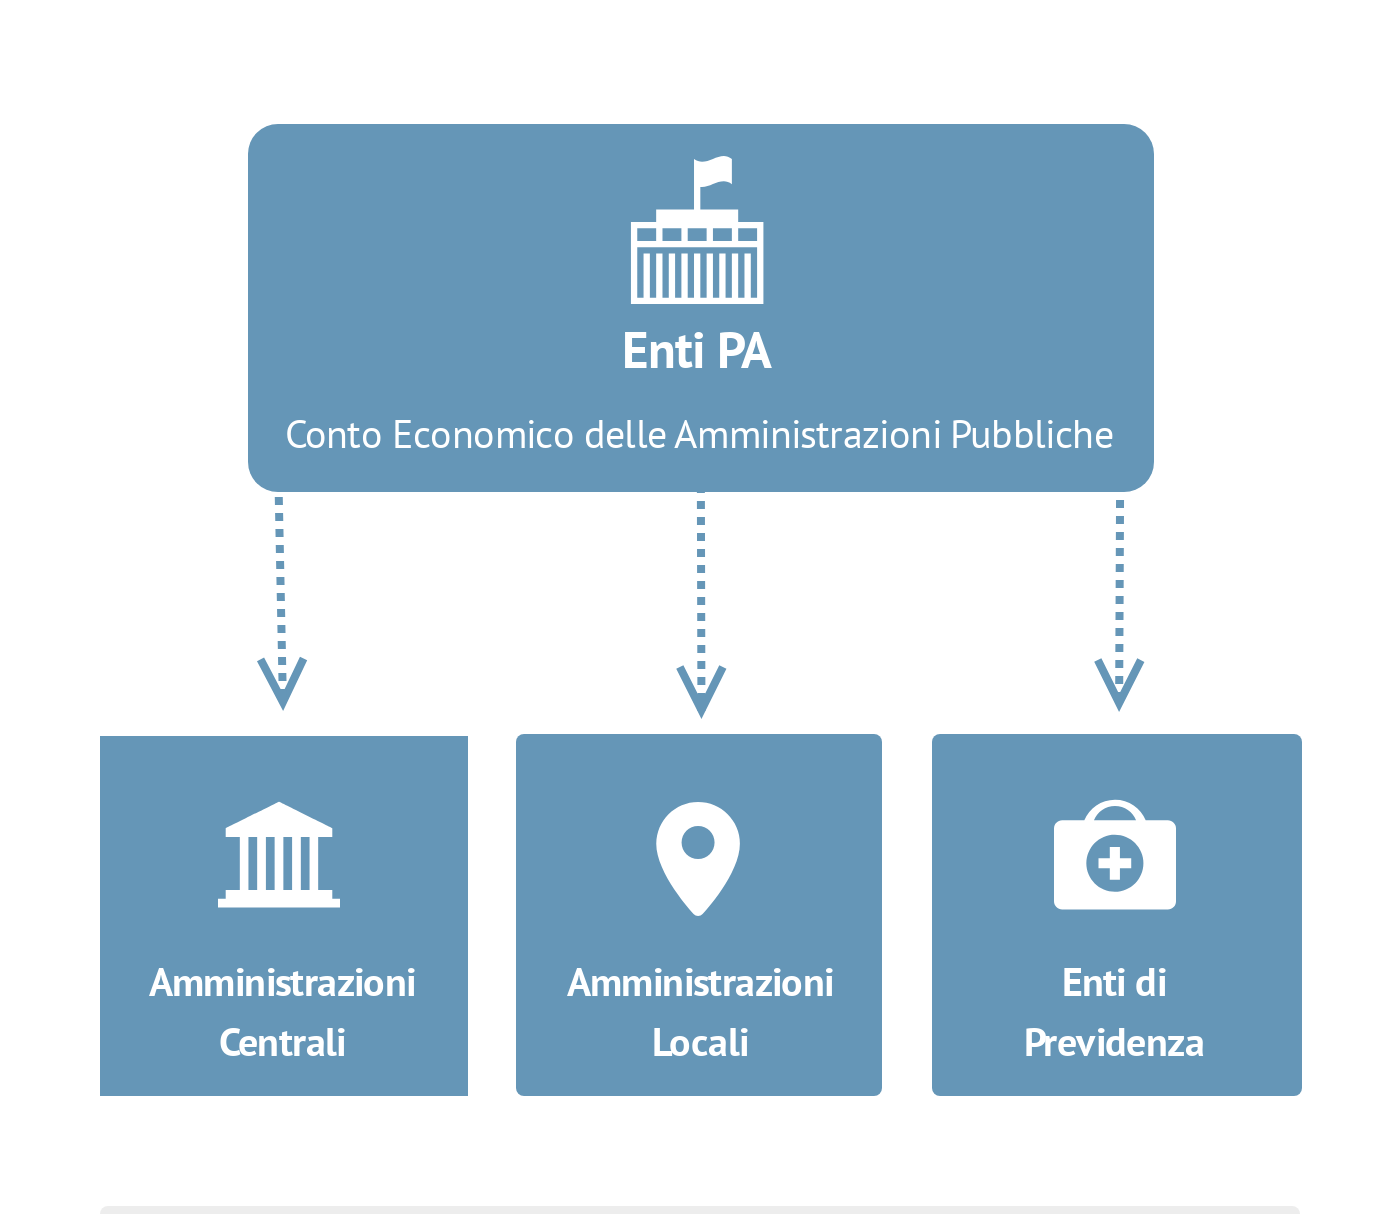 L'infografica mostra come conto economico delle Amministrazioni pubbliche è definito come il consolidamento dei conti di tre sotto settori; l'Amministrazione Centrale, l'Amministrazione Locale e gli Enti di previdenza.